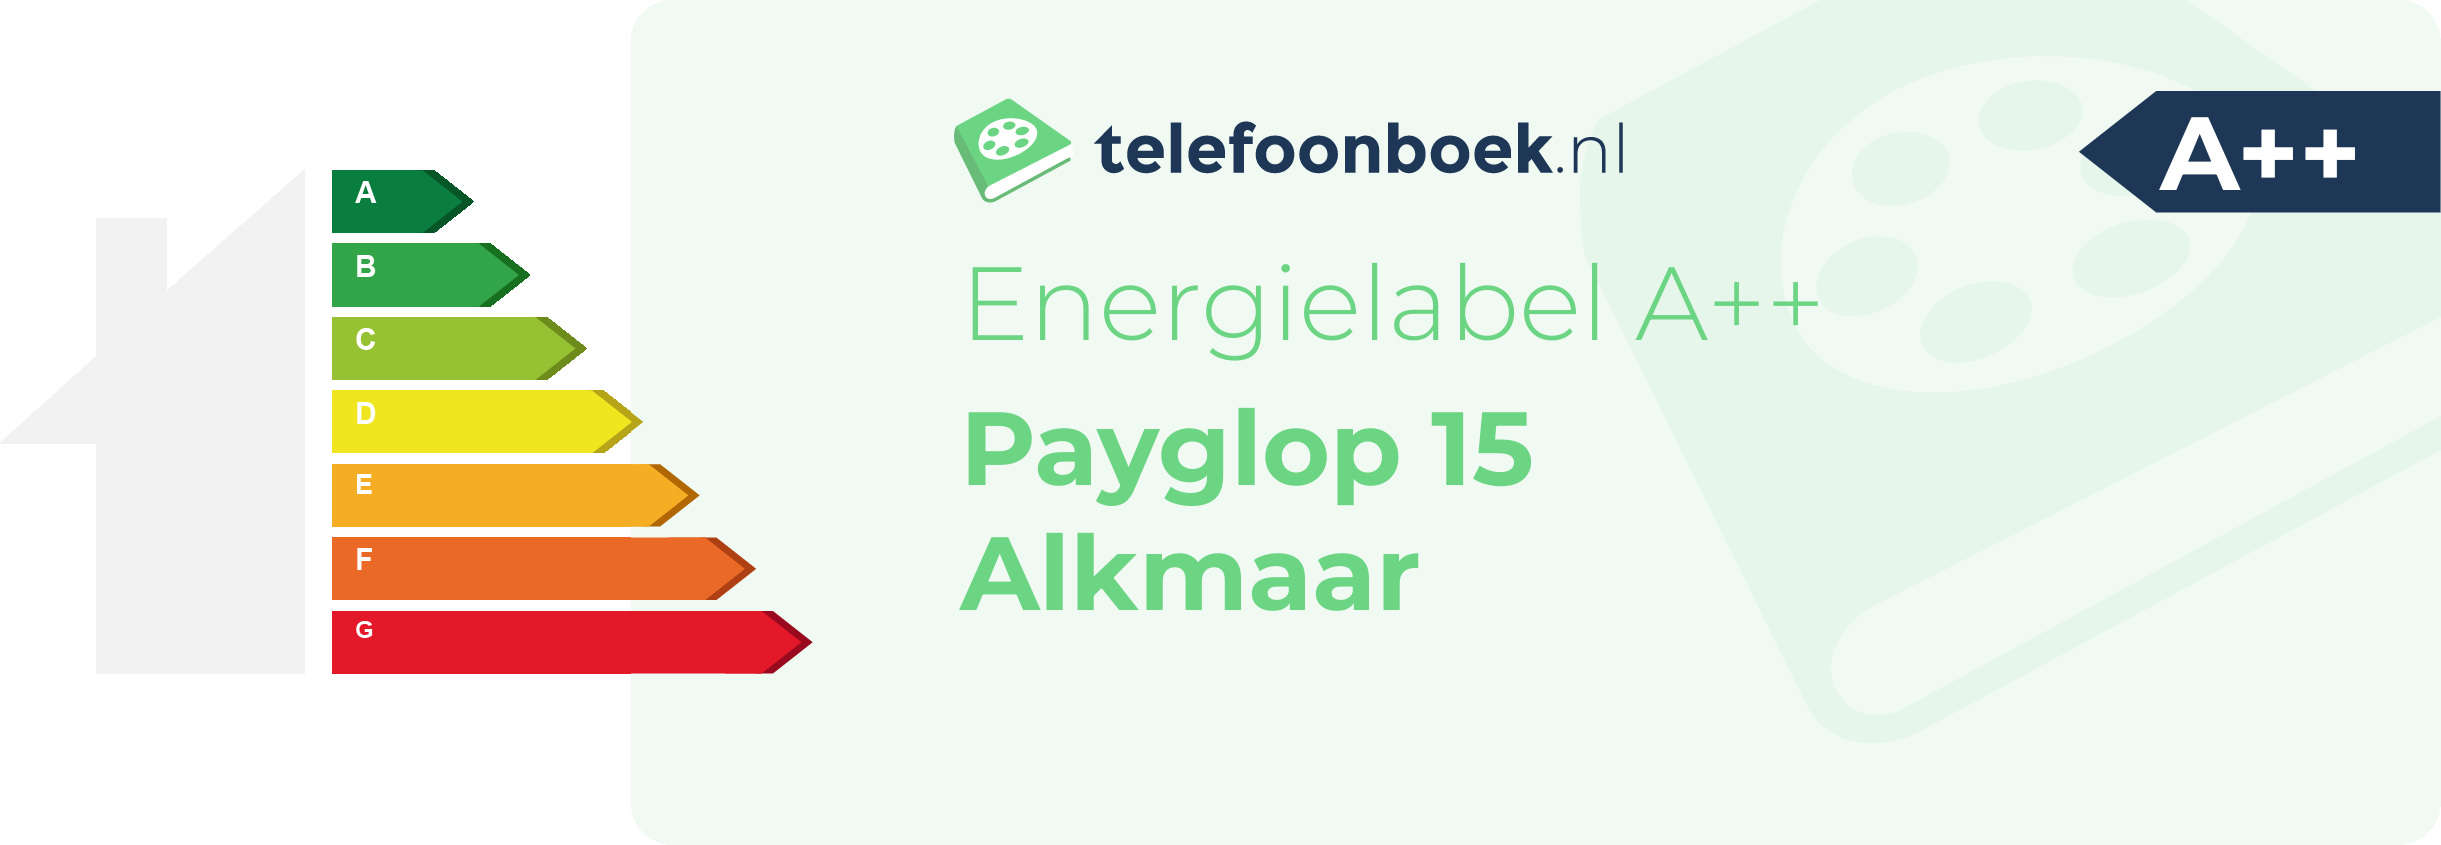 Energielabel Payglop 15 Alkmaar